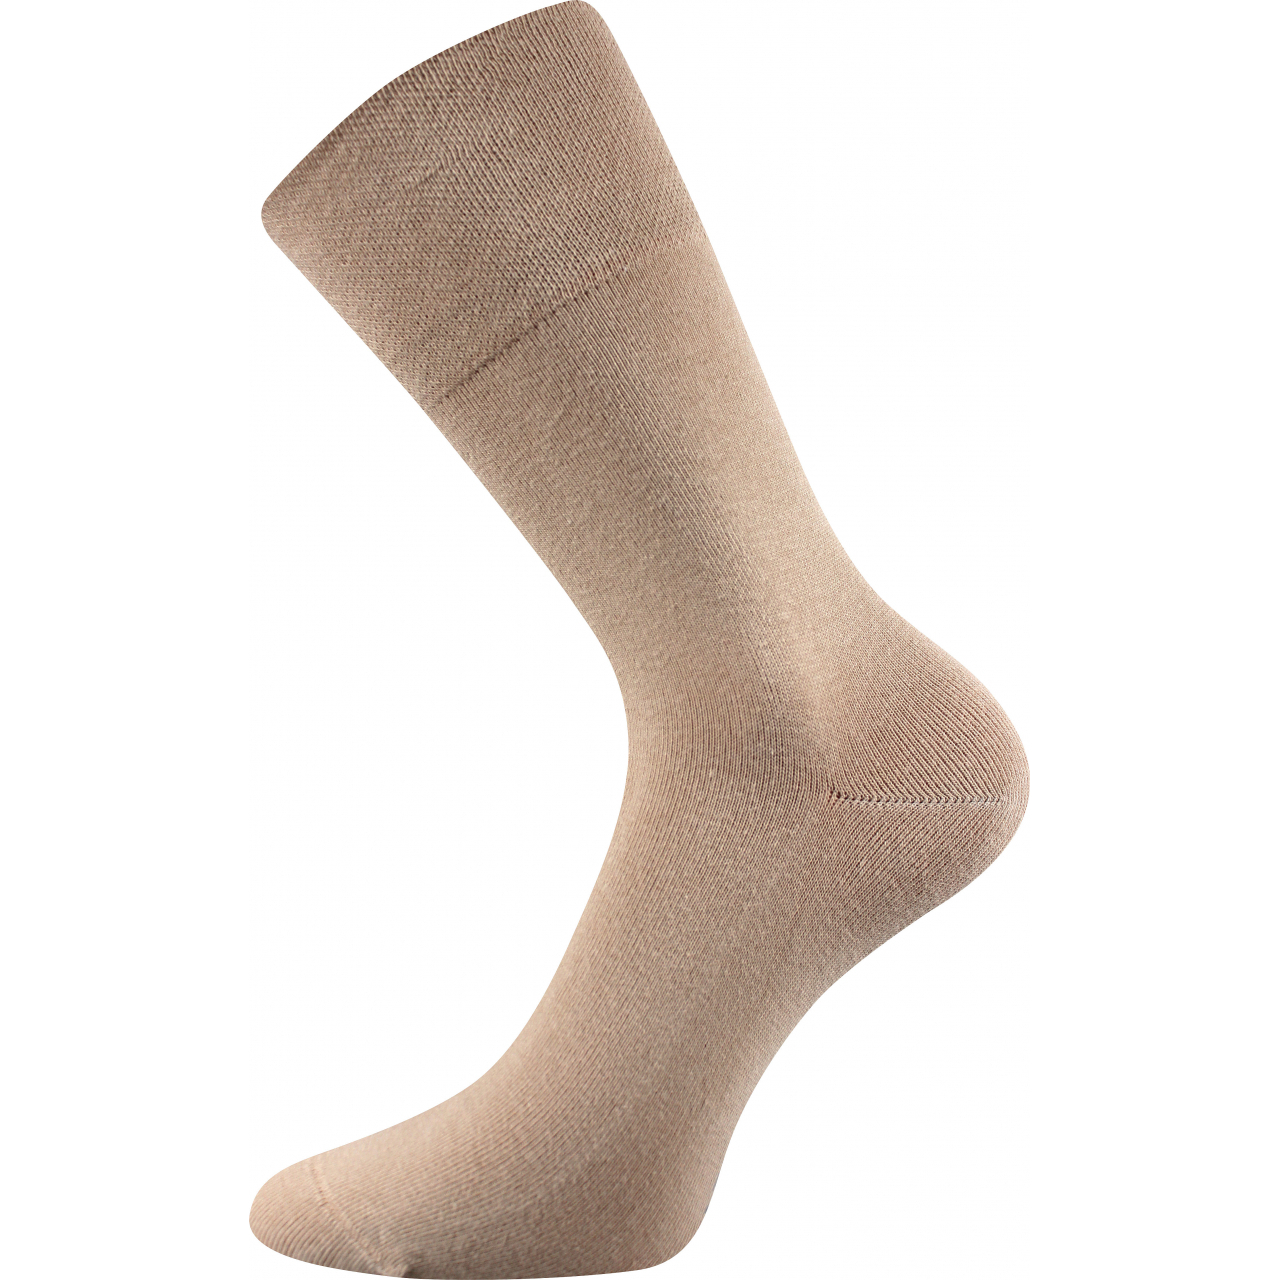 Ponožky klasické unisex Lonka Diagram - béžové, 35-38